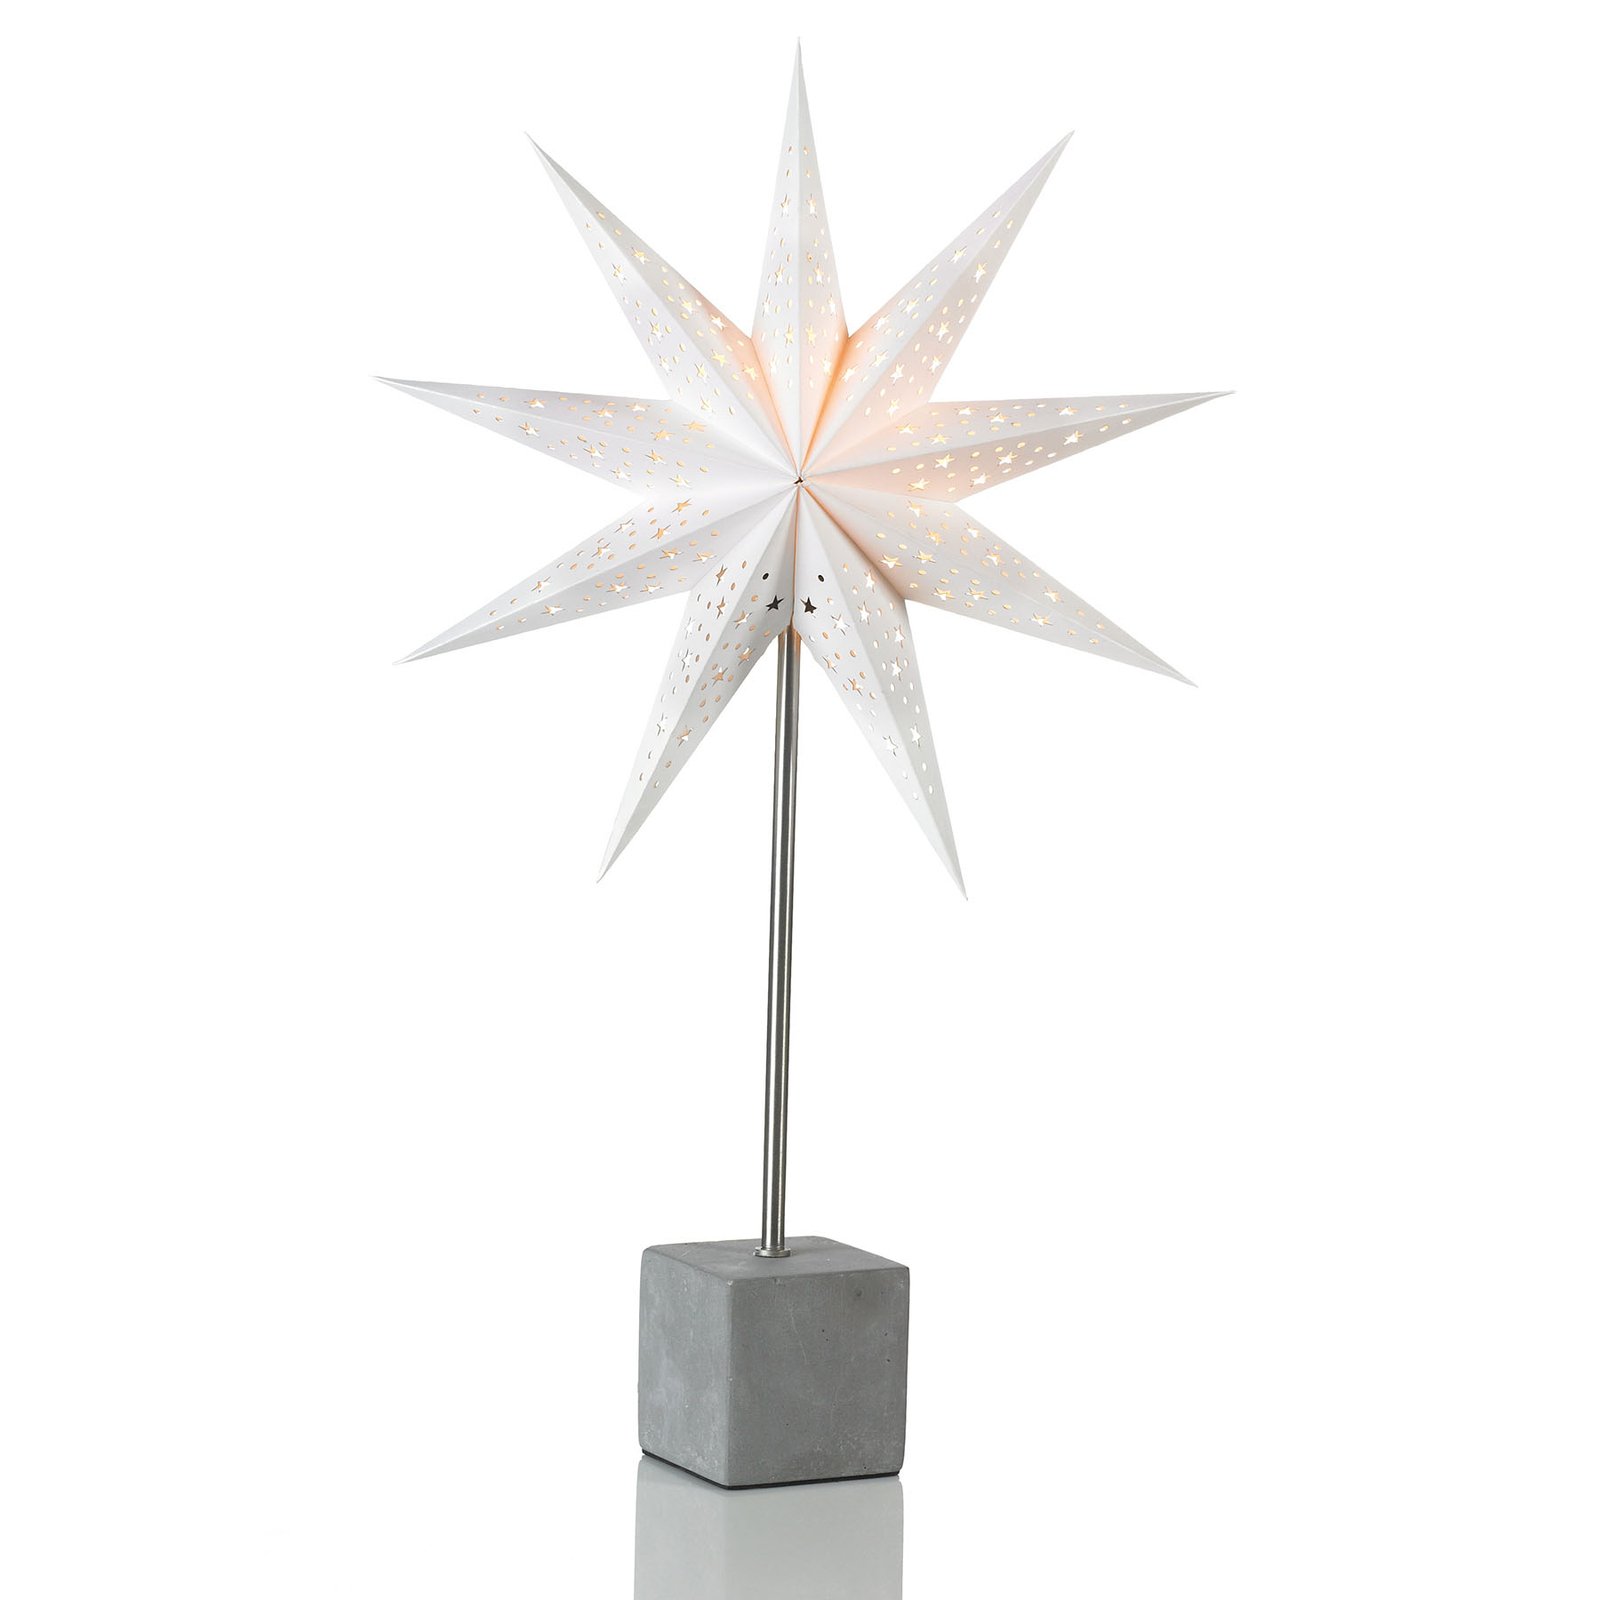 Dekorační hvězda Hard jako stolní lampa, 58cm bílá